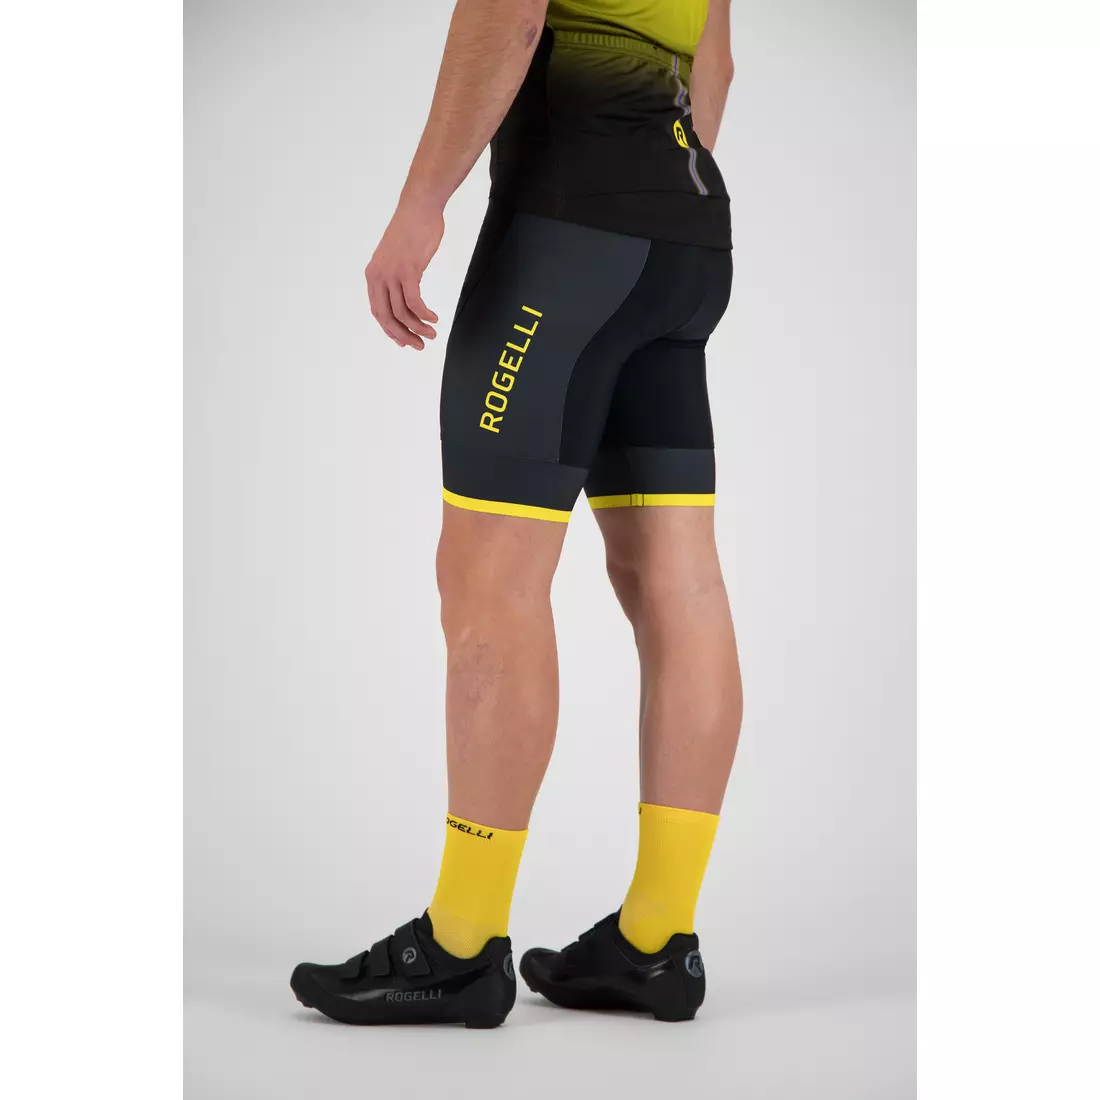 ROGELLI Fuse šortky so šľapkami Čierna/žltá 002.234